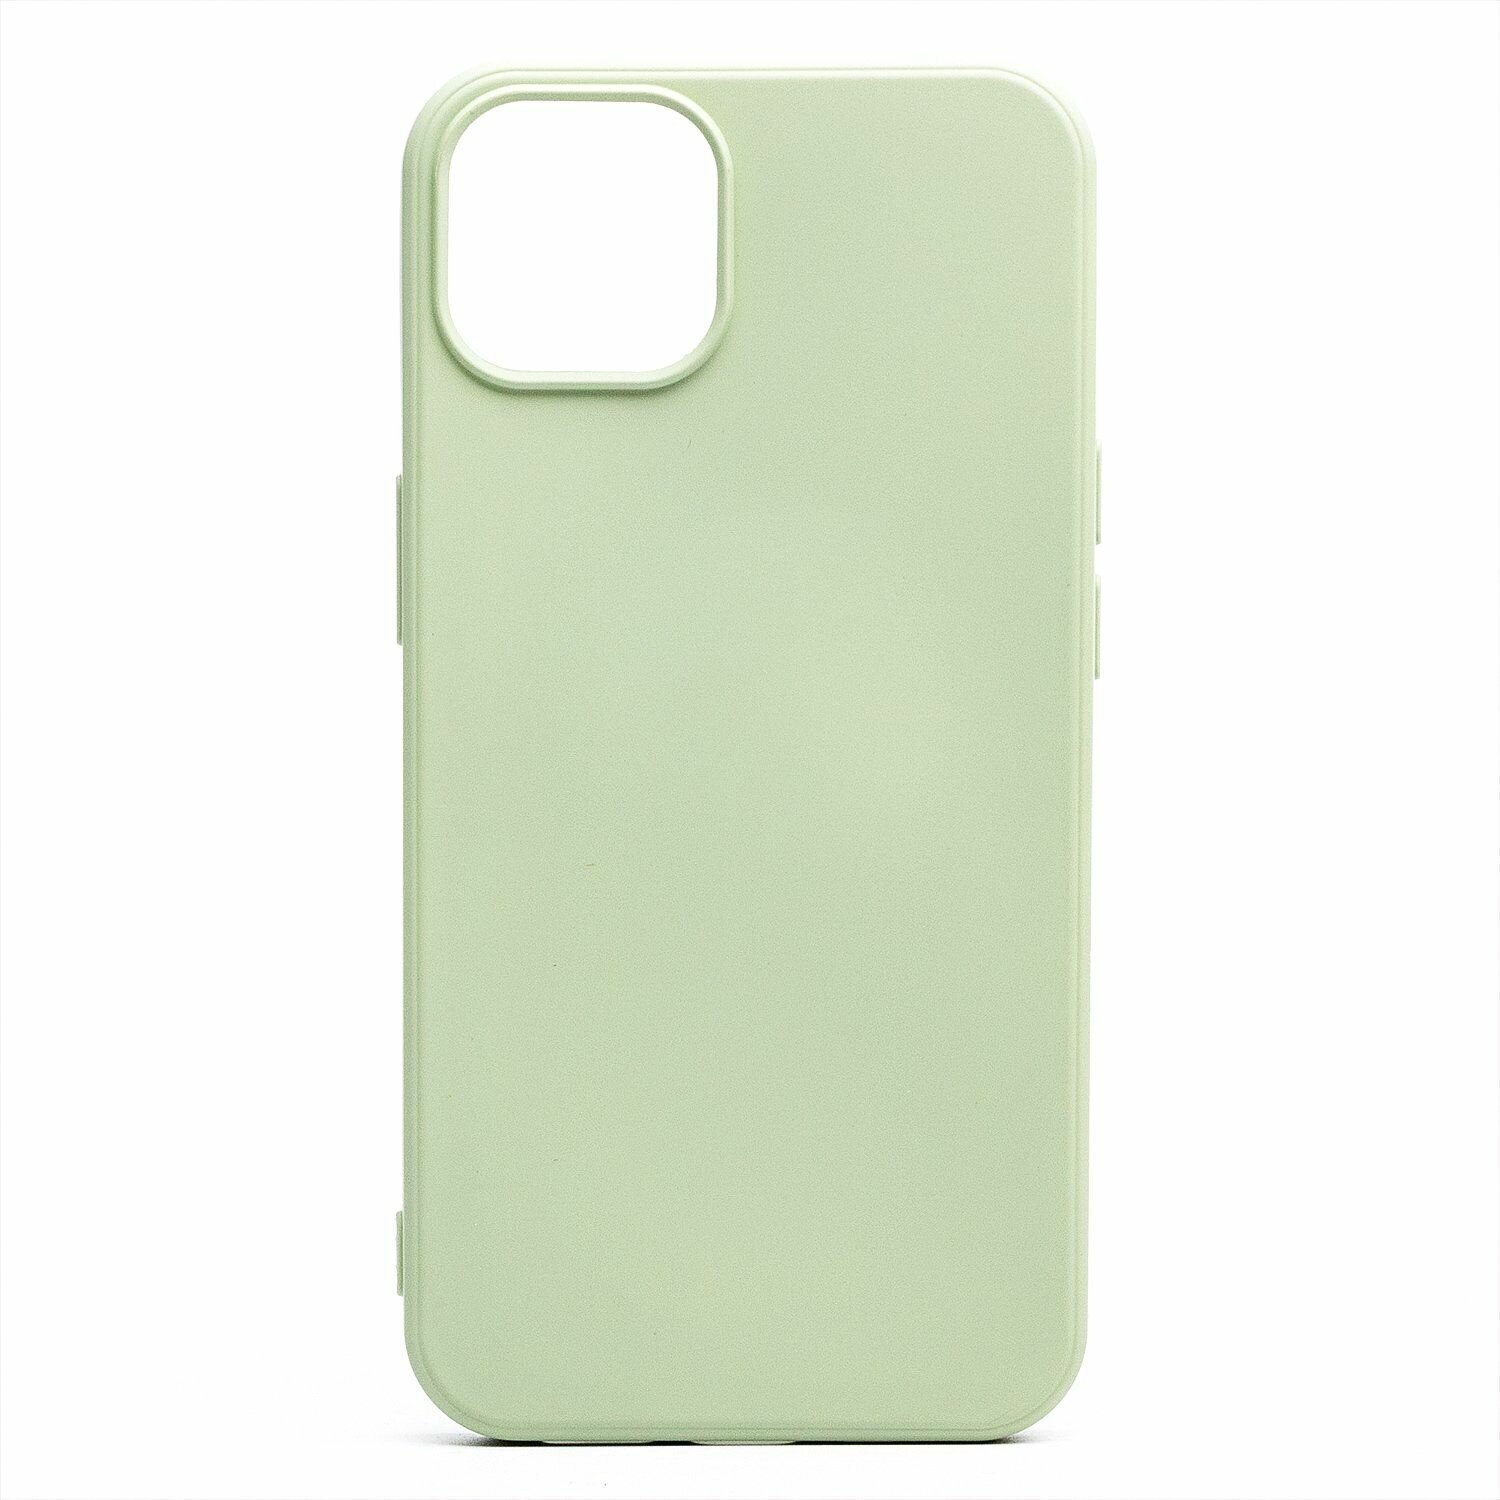 Однотонный силиконовый чехол для Apple iPhone 13 mini / с soft touch покрытием / светло-зеленый